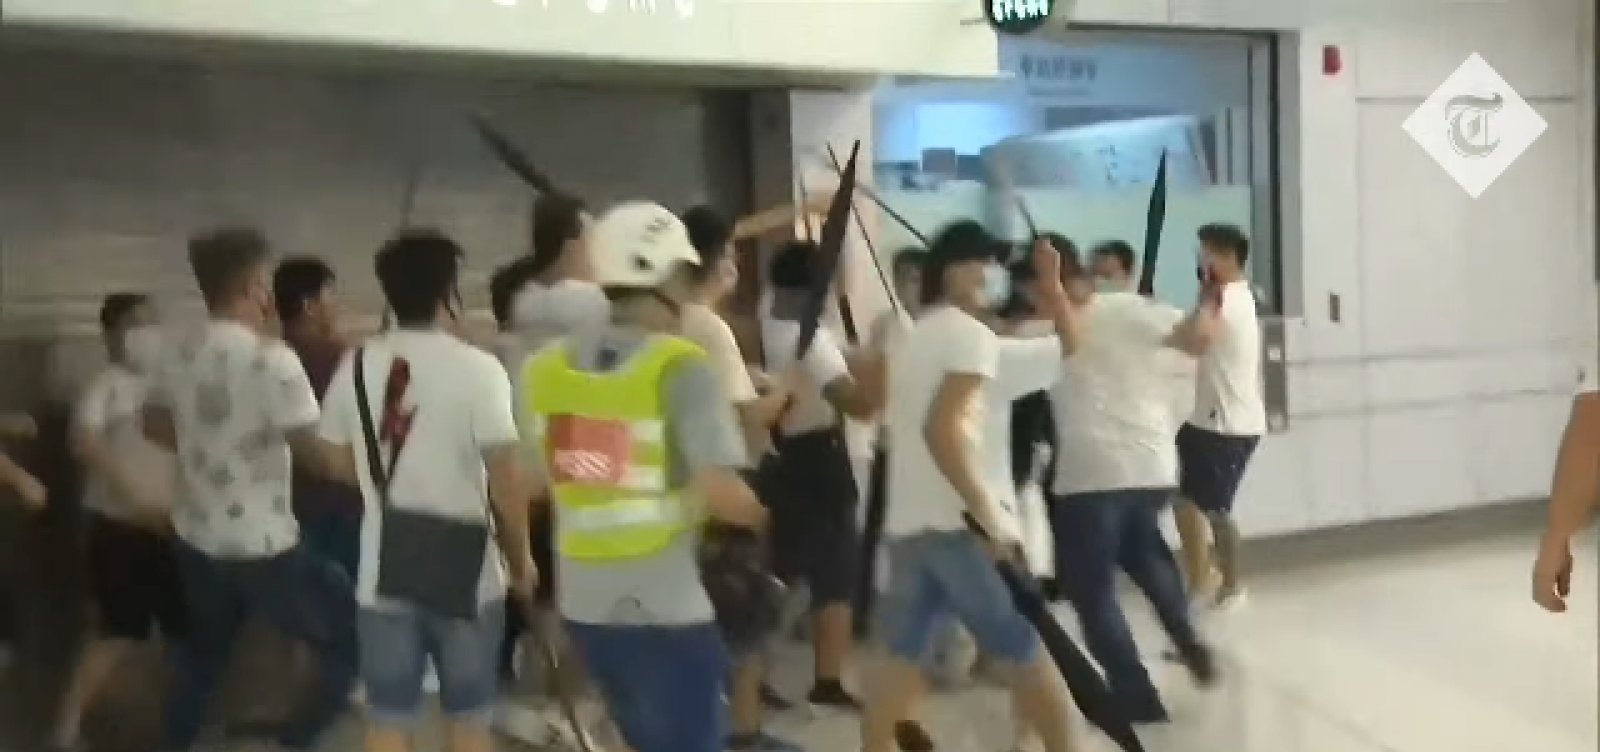 Grupo ataca manifestantes em metrô de Hong Kong e deixa 45 feridos